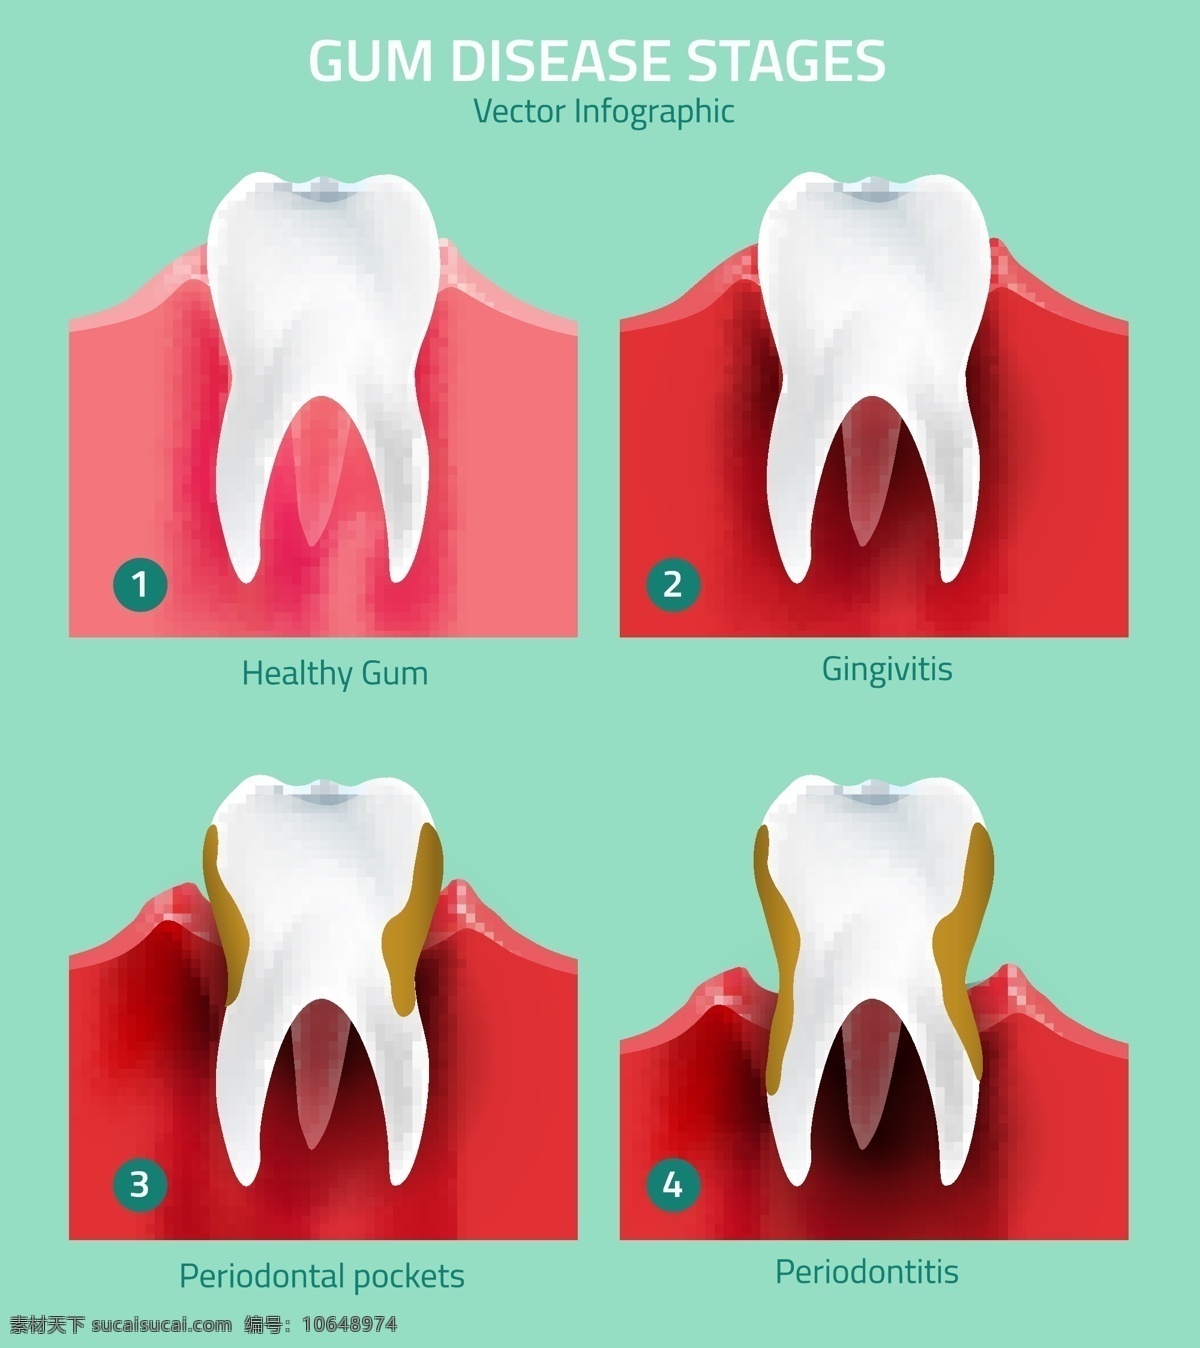 矢量牙齿 牙膏 牙刷 保护牙齿 牙齿 广告设计模板